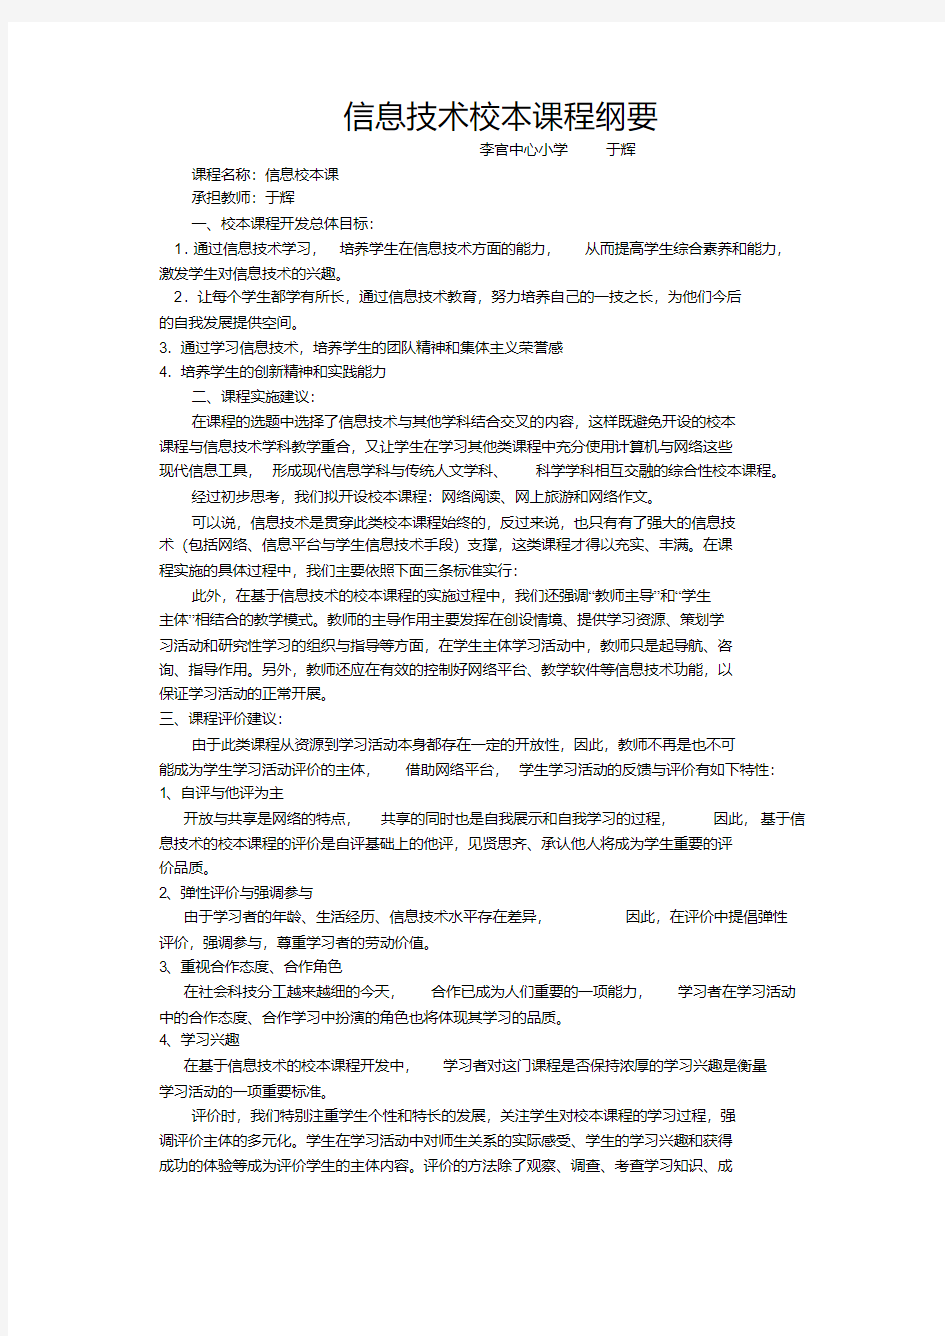 信息技术校本课程纲要.pdf